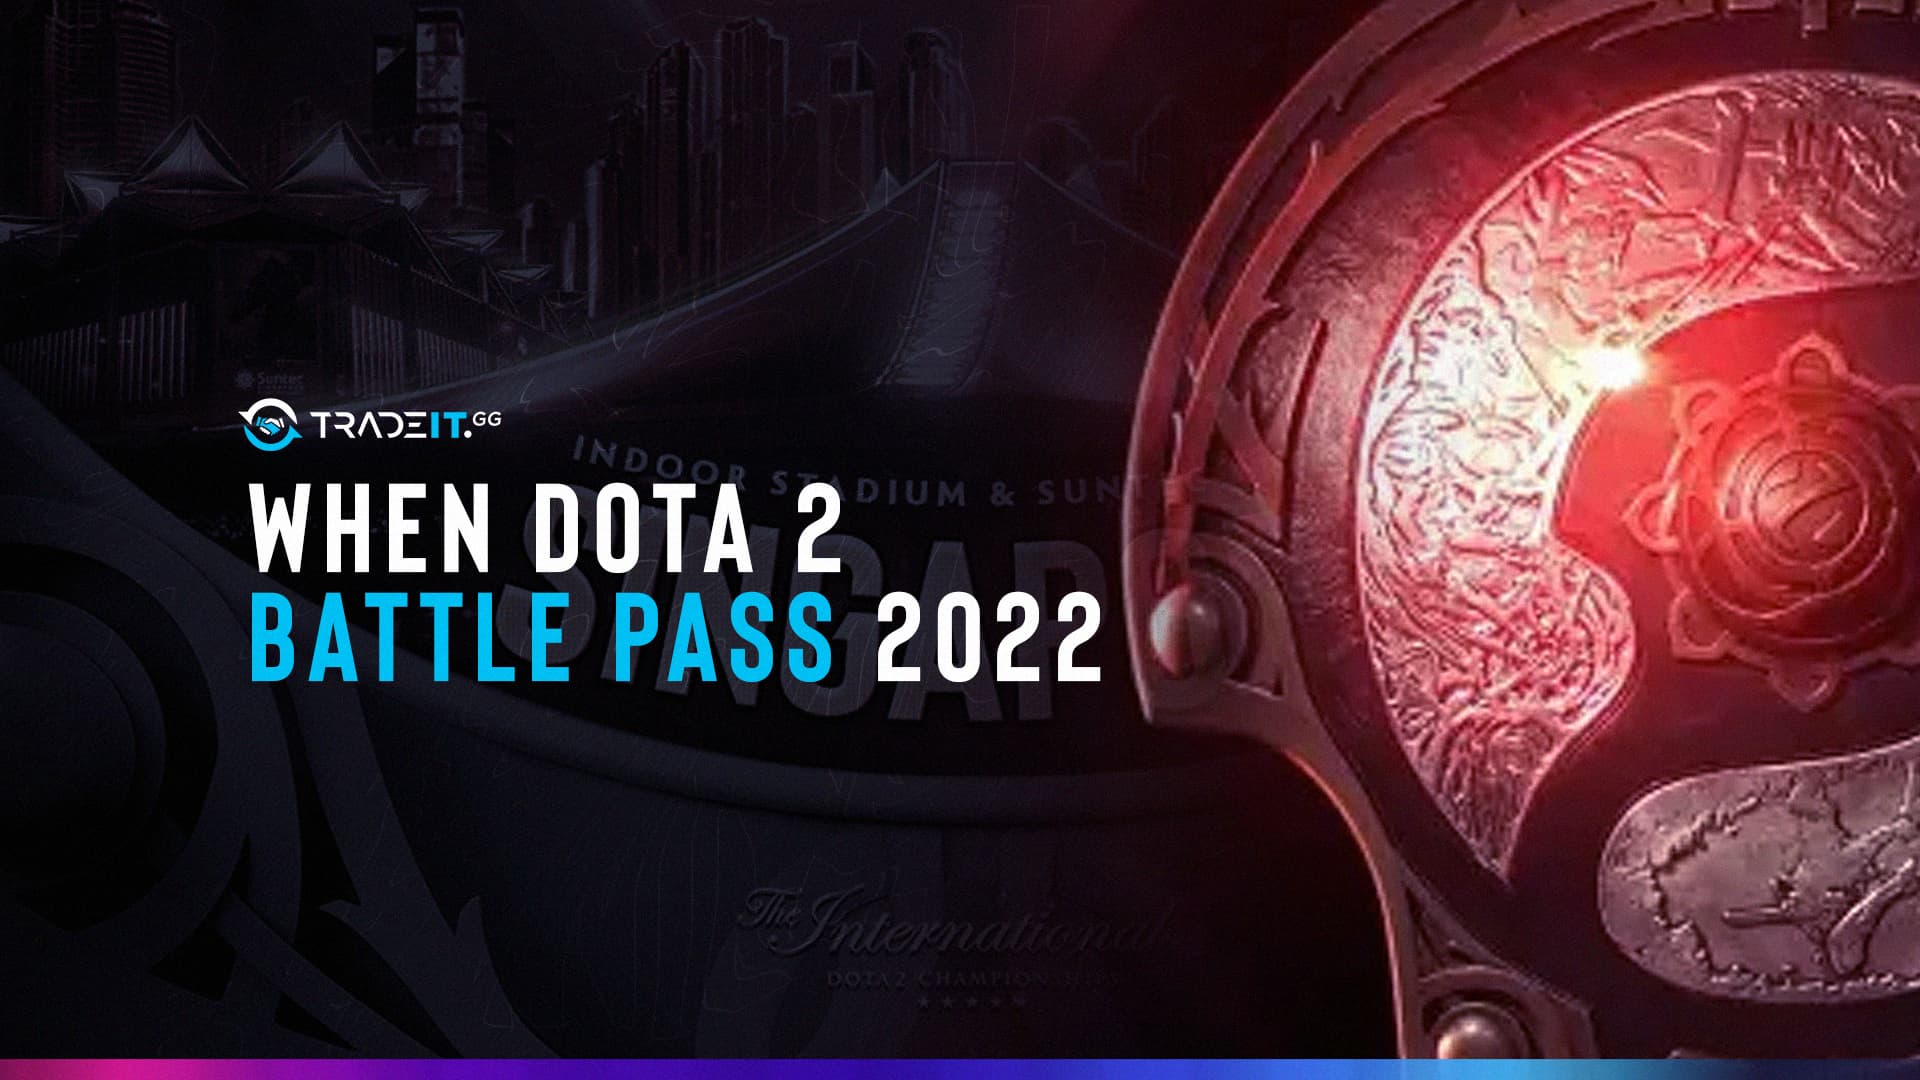 Dota 2 Battle Pass 2022 Release Date